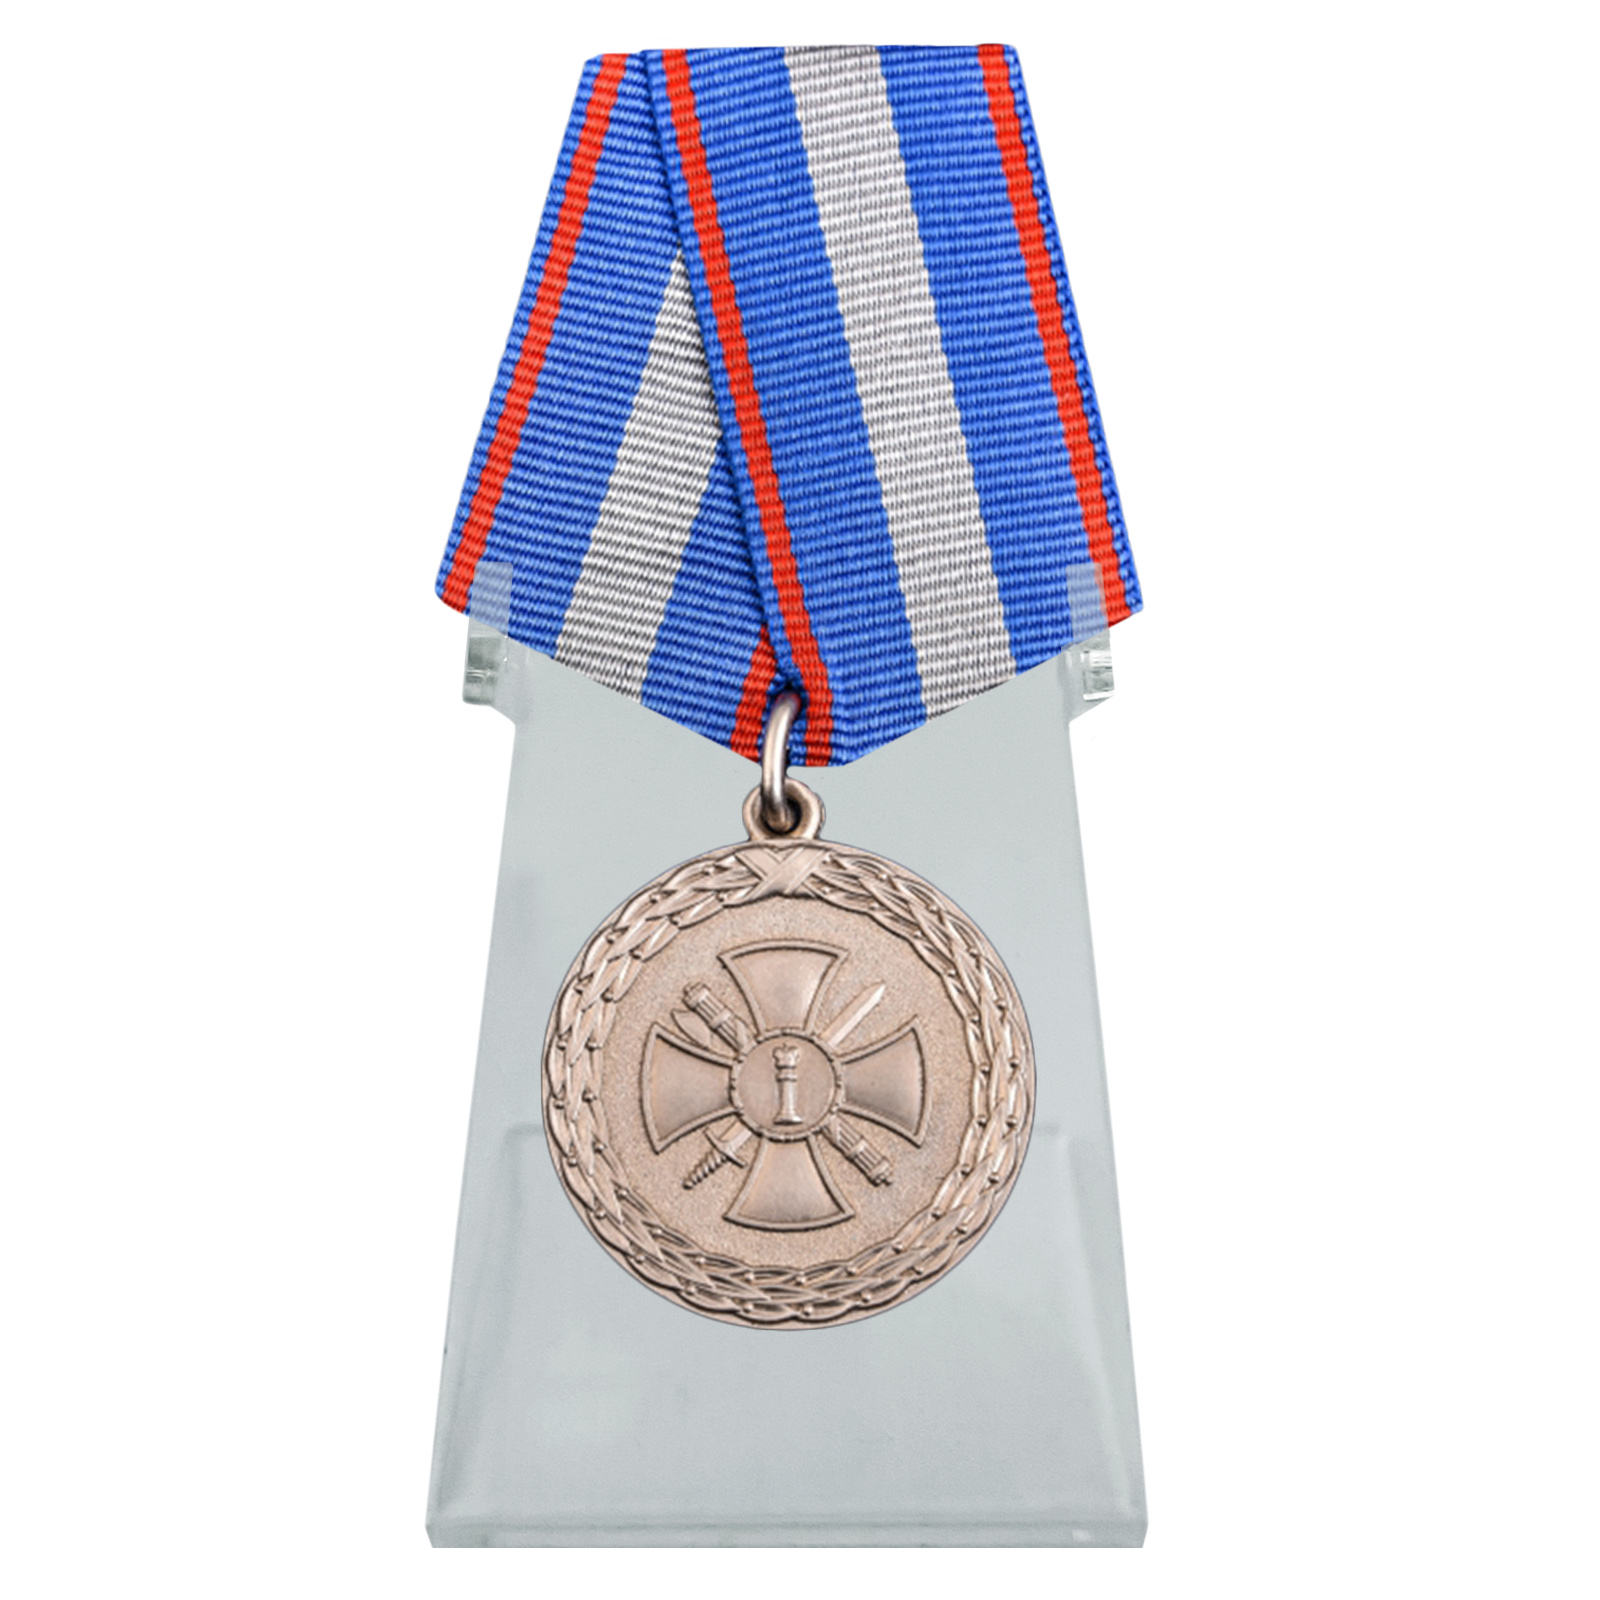 Медаль "За укрепление уголовно-исполнительной системы" 2 степени на подставке